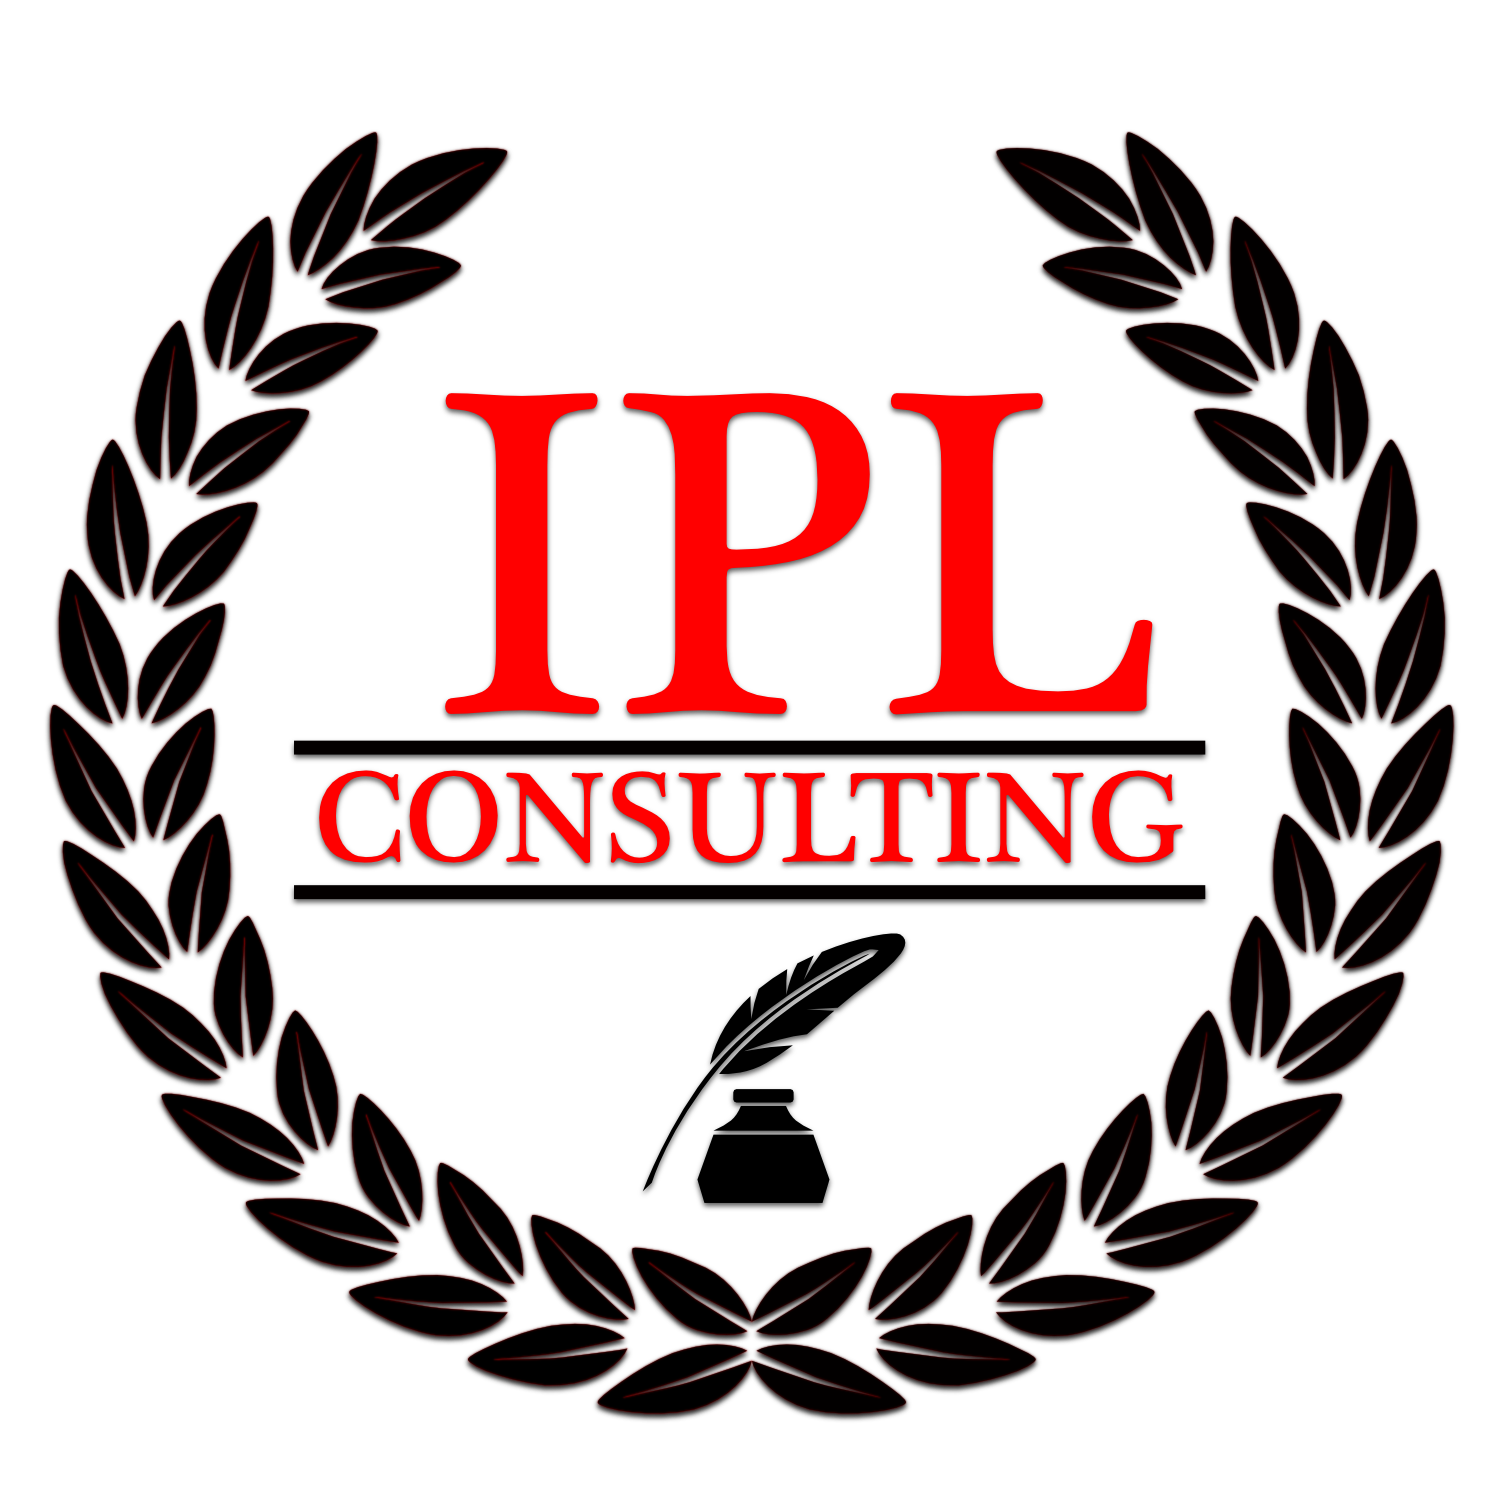 IPL PNG LOGO, ipl logo HD wallpaper | Pxfuel-nextbuild.com.vn